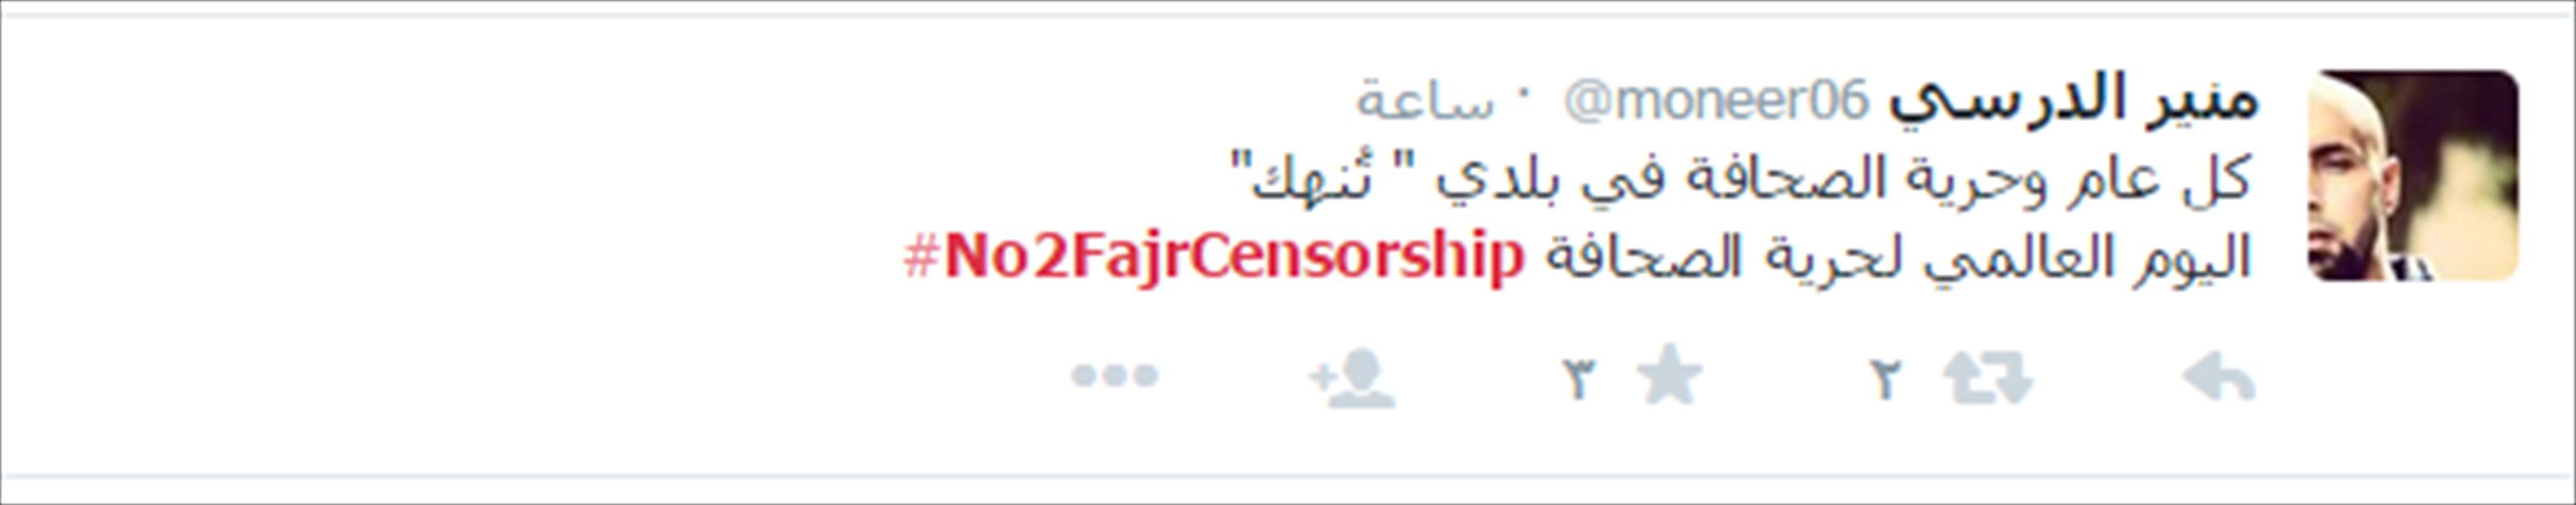 حراك على «تويتر» في يوم حرية الصحافة يرفض حجب «بوابة الوسط»